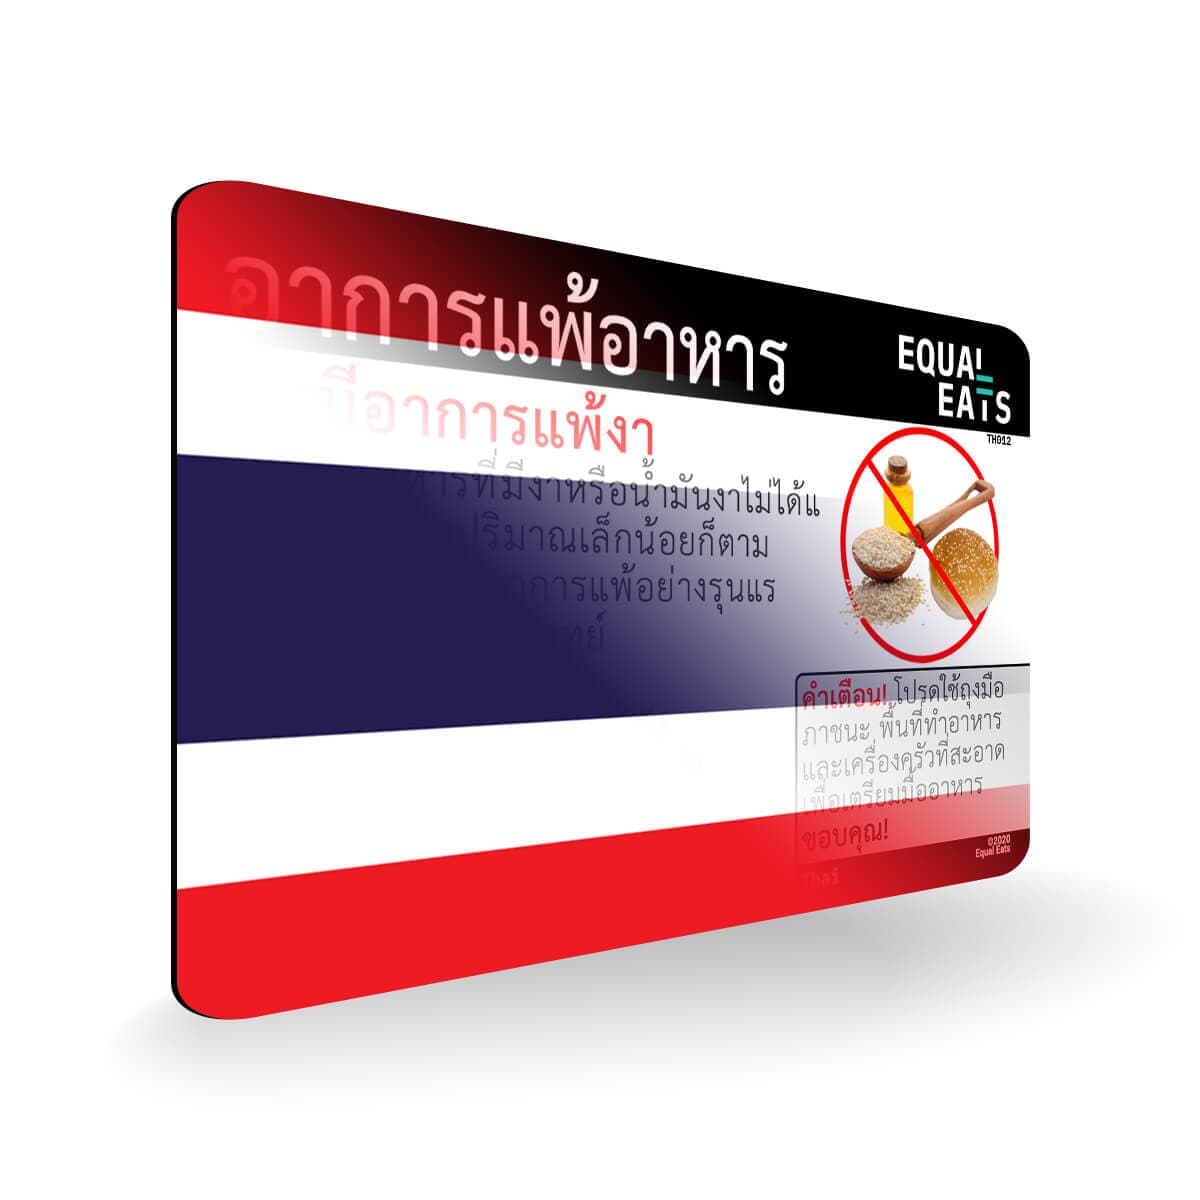 Sesame Allergy in Thai. Sesame Allergy Card for Thailand